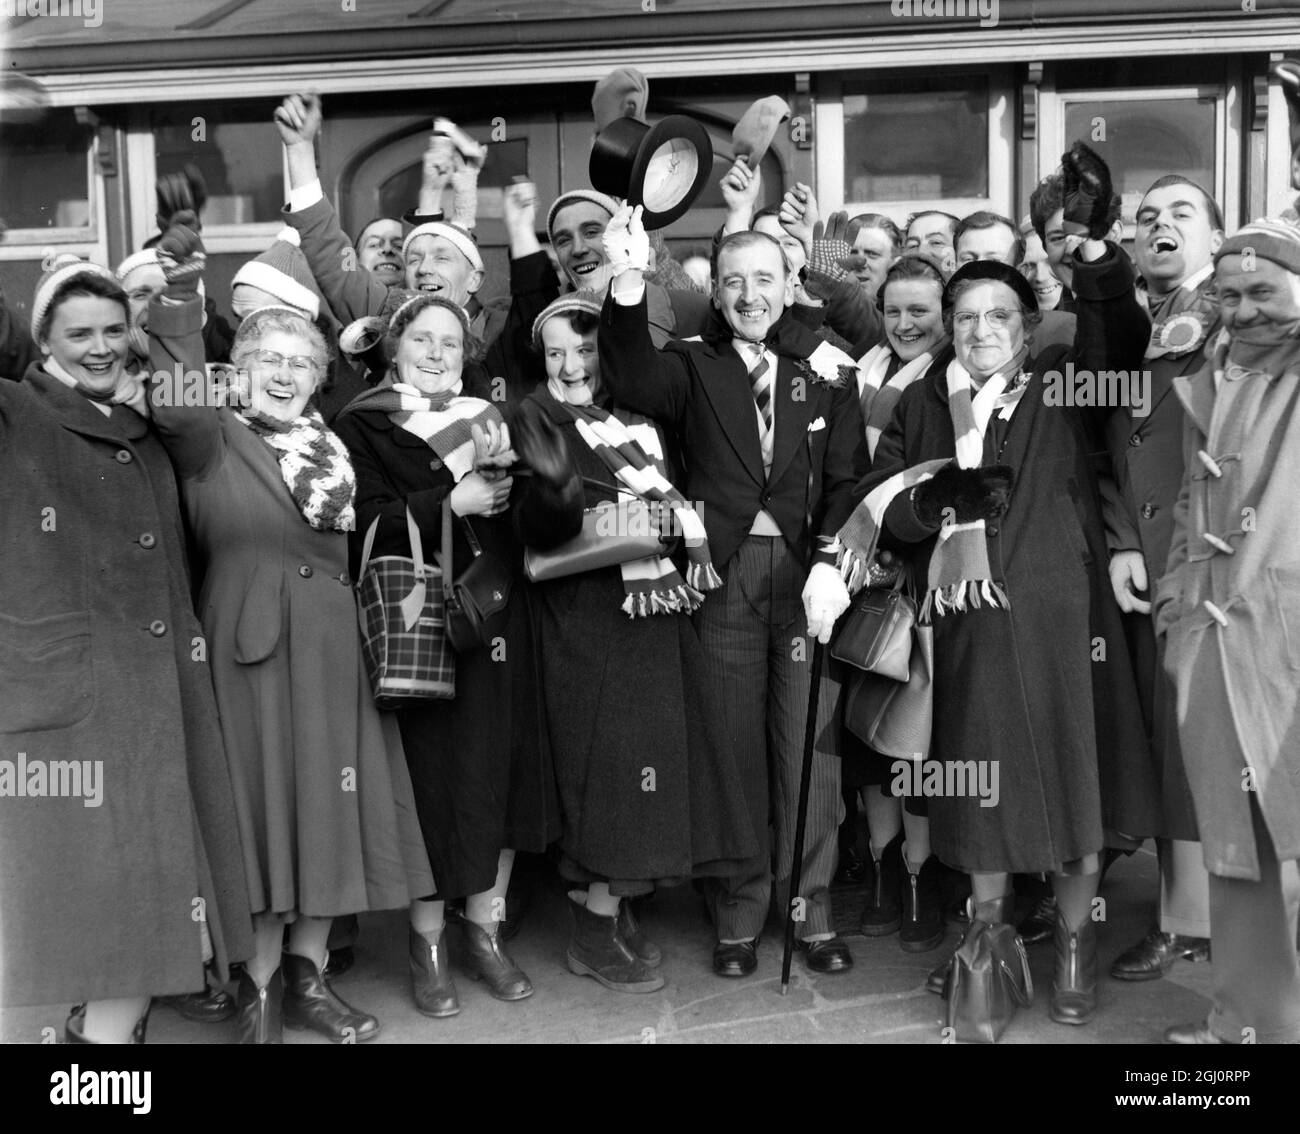 LES SUPPORTERS DE PETERBOROUGH ARRIVENT À LONDRES des milliers de supporters du Nord envahissent Londres ce matin pour assister aux différentes cravates de la coupe , dans lesquelles leurs équipes apparaissent . PHOTOGRAPHIES:- Une foule heureuse de supporters de Peterborough sourit tous et portant leurs couleurs , à leur arrivée à la Croix du Roi ce matin . Peterborough joue Fulham à Craven Cottage dans la coupe Tie . 10 janvier 1959 Banque D'Images